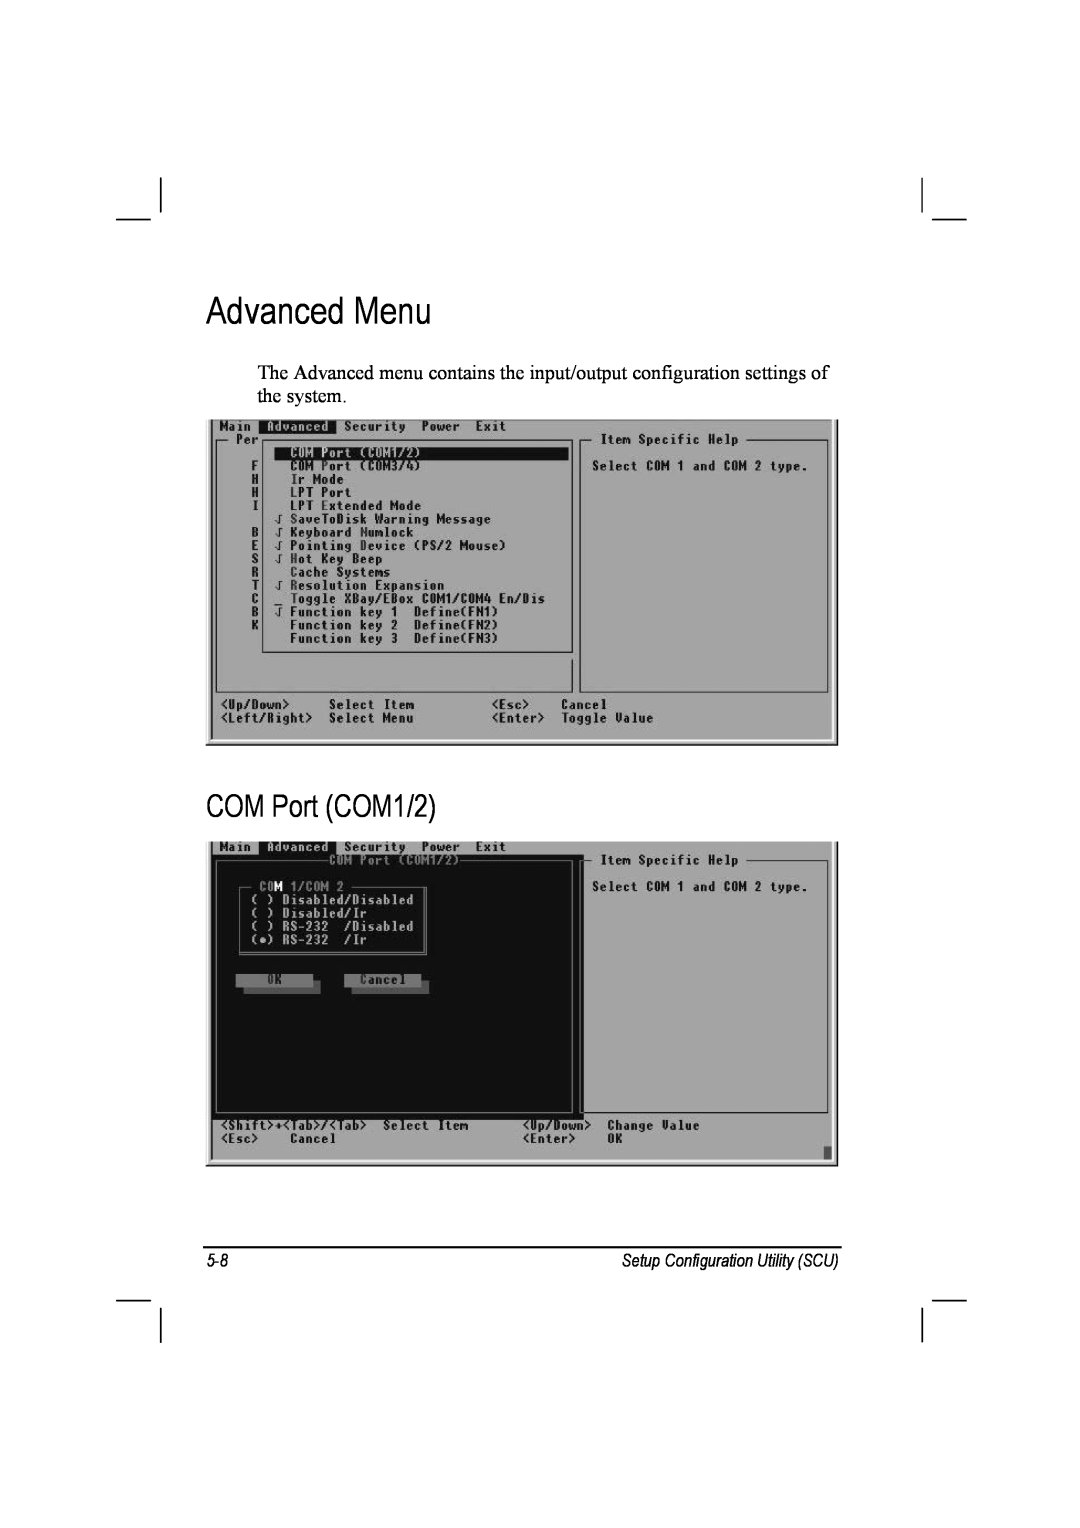 TAG 10 manual Advanced Menu, COM Port COM1/2, Setup Configuration Utility SCU 